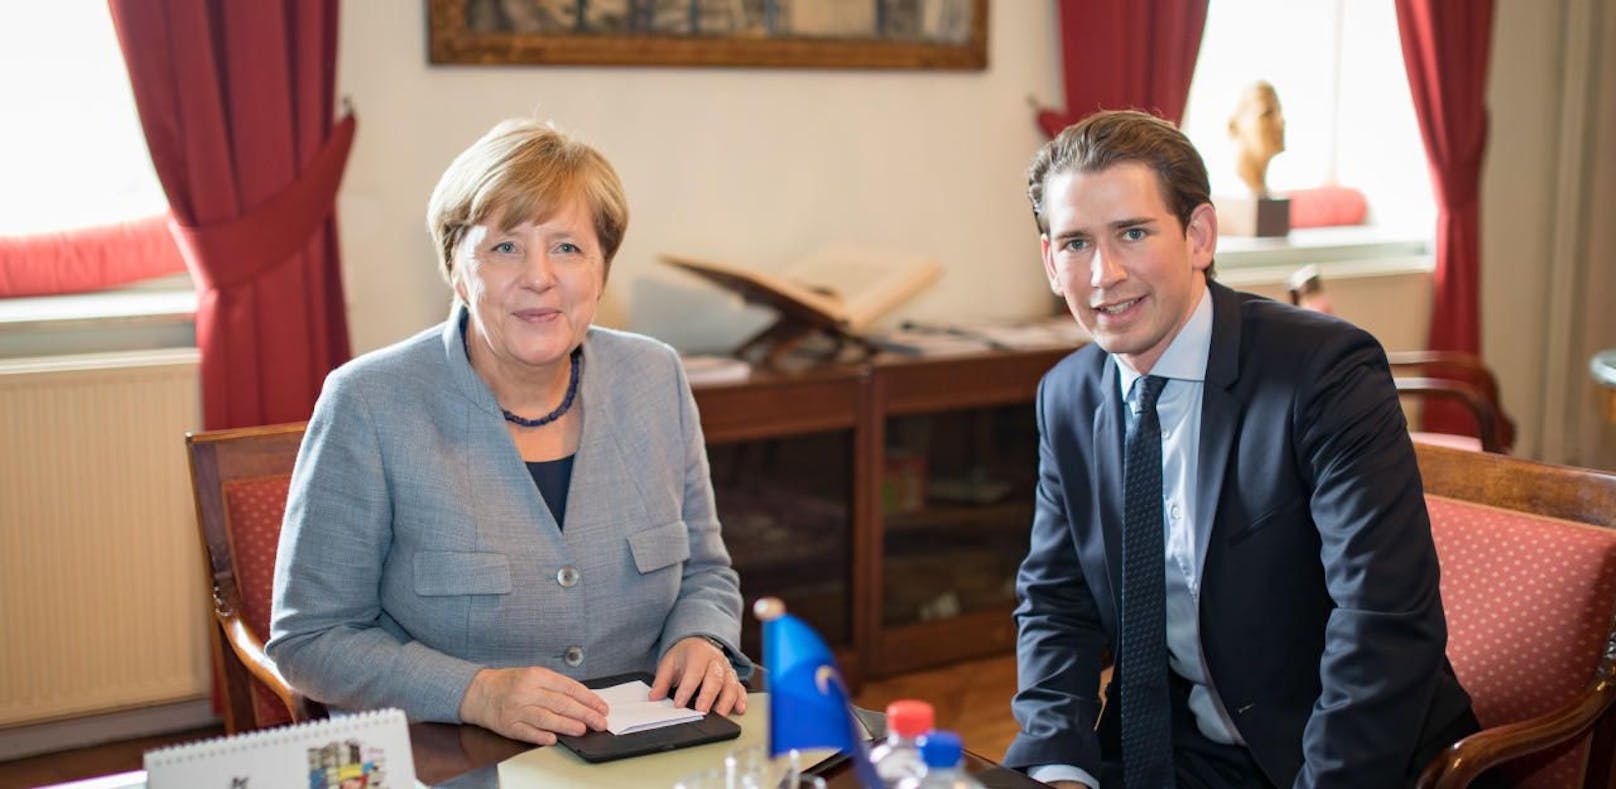 Die deutsche Kanzlerin Angela Merkel mit Sebastian Kurz. (Archivfoto)